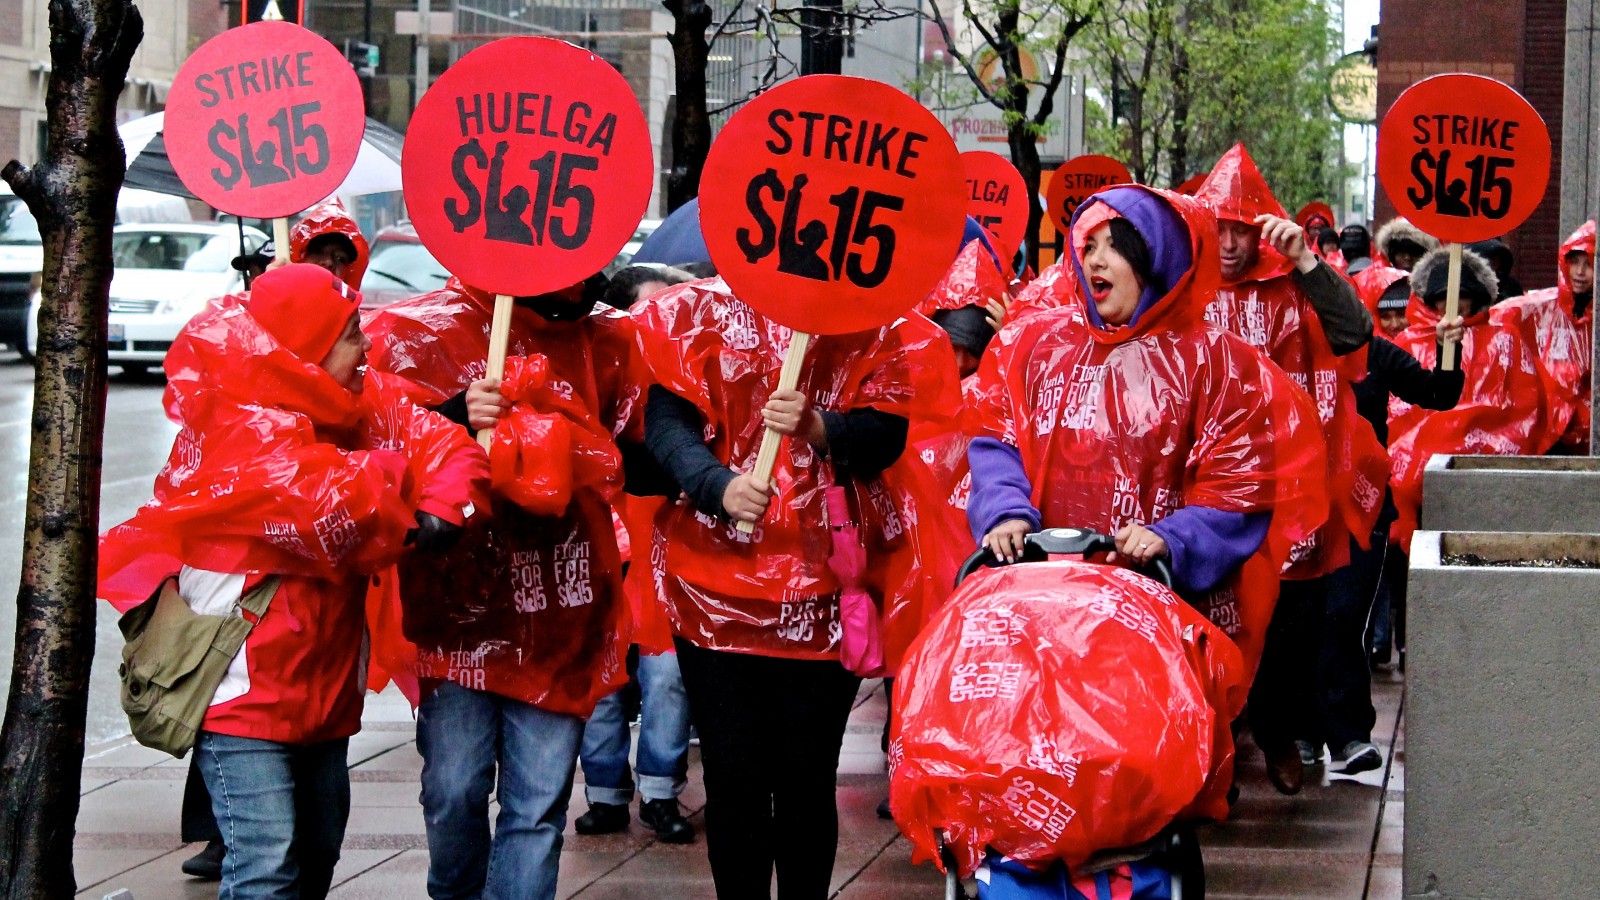 הפגנה של ארגון "נאבקים למען ה-15" בשיקגו. "אנשים לא מחפשים רק כסף. הם מחפשים חירות" (צילום ארכיון: Bob Simpson, מתוך Flickr).